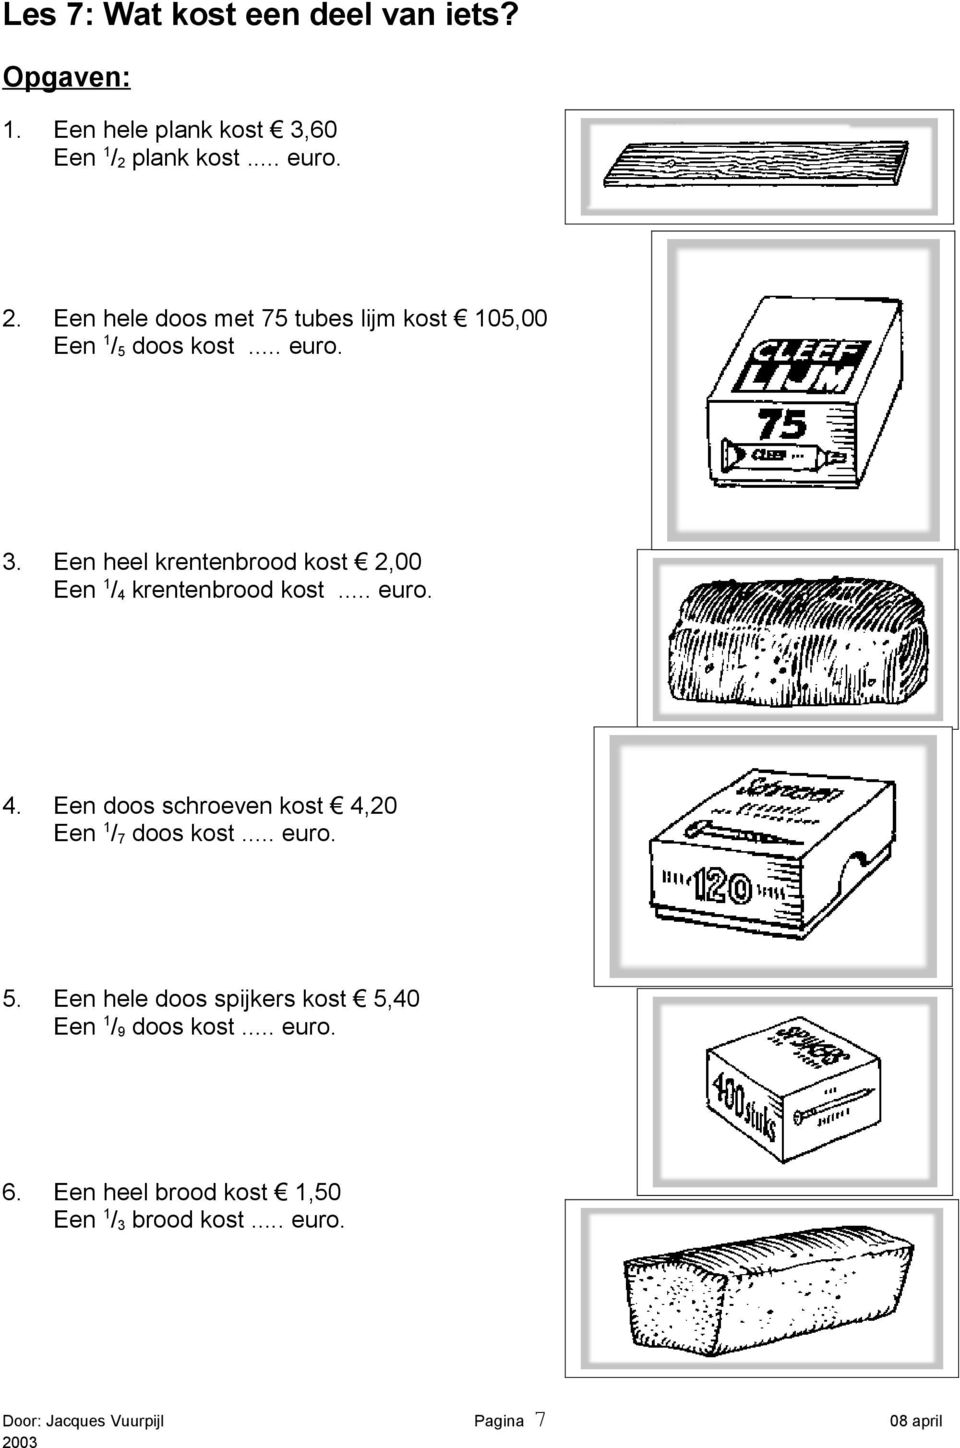 Een heel krentenbrood kost 2,00 Een 1 / 4 krentenbrood kost... euro. 4. Een doos schroeven kost 4,20 Een 1 / 7 doos kost.